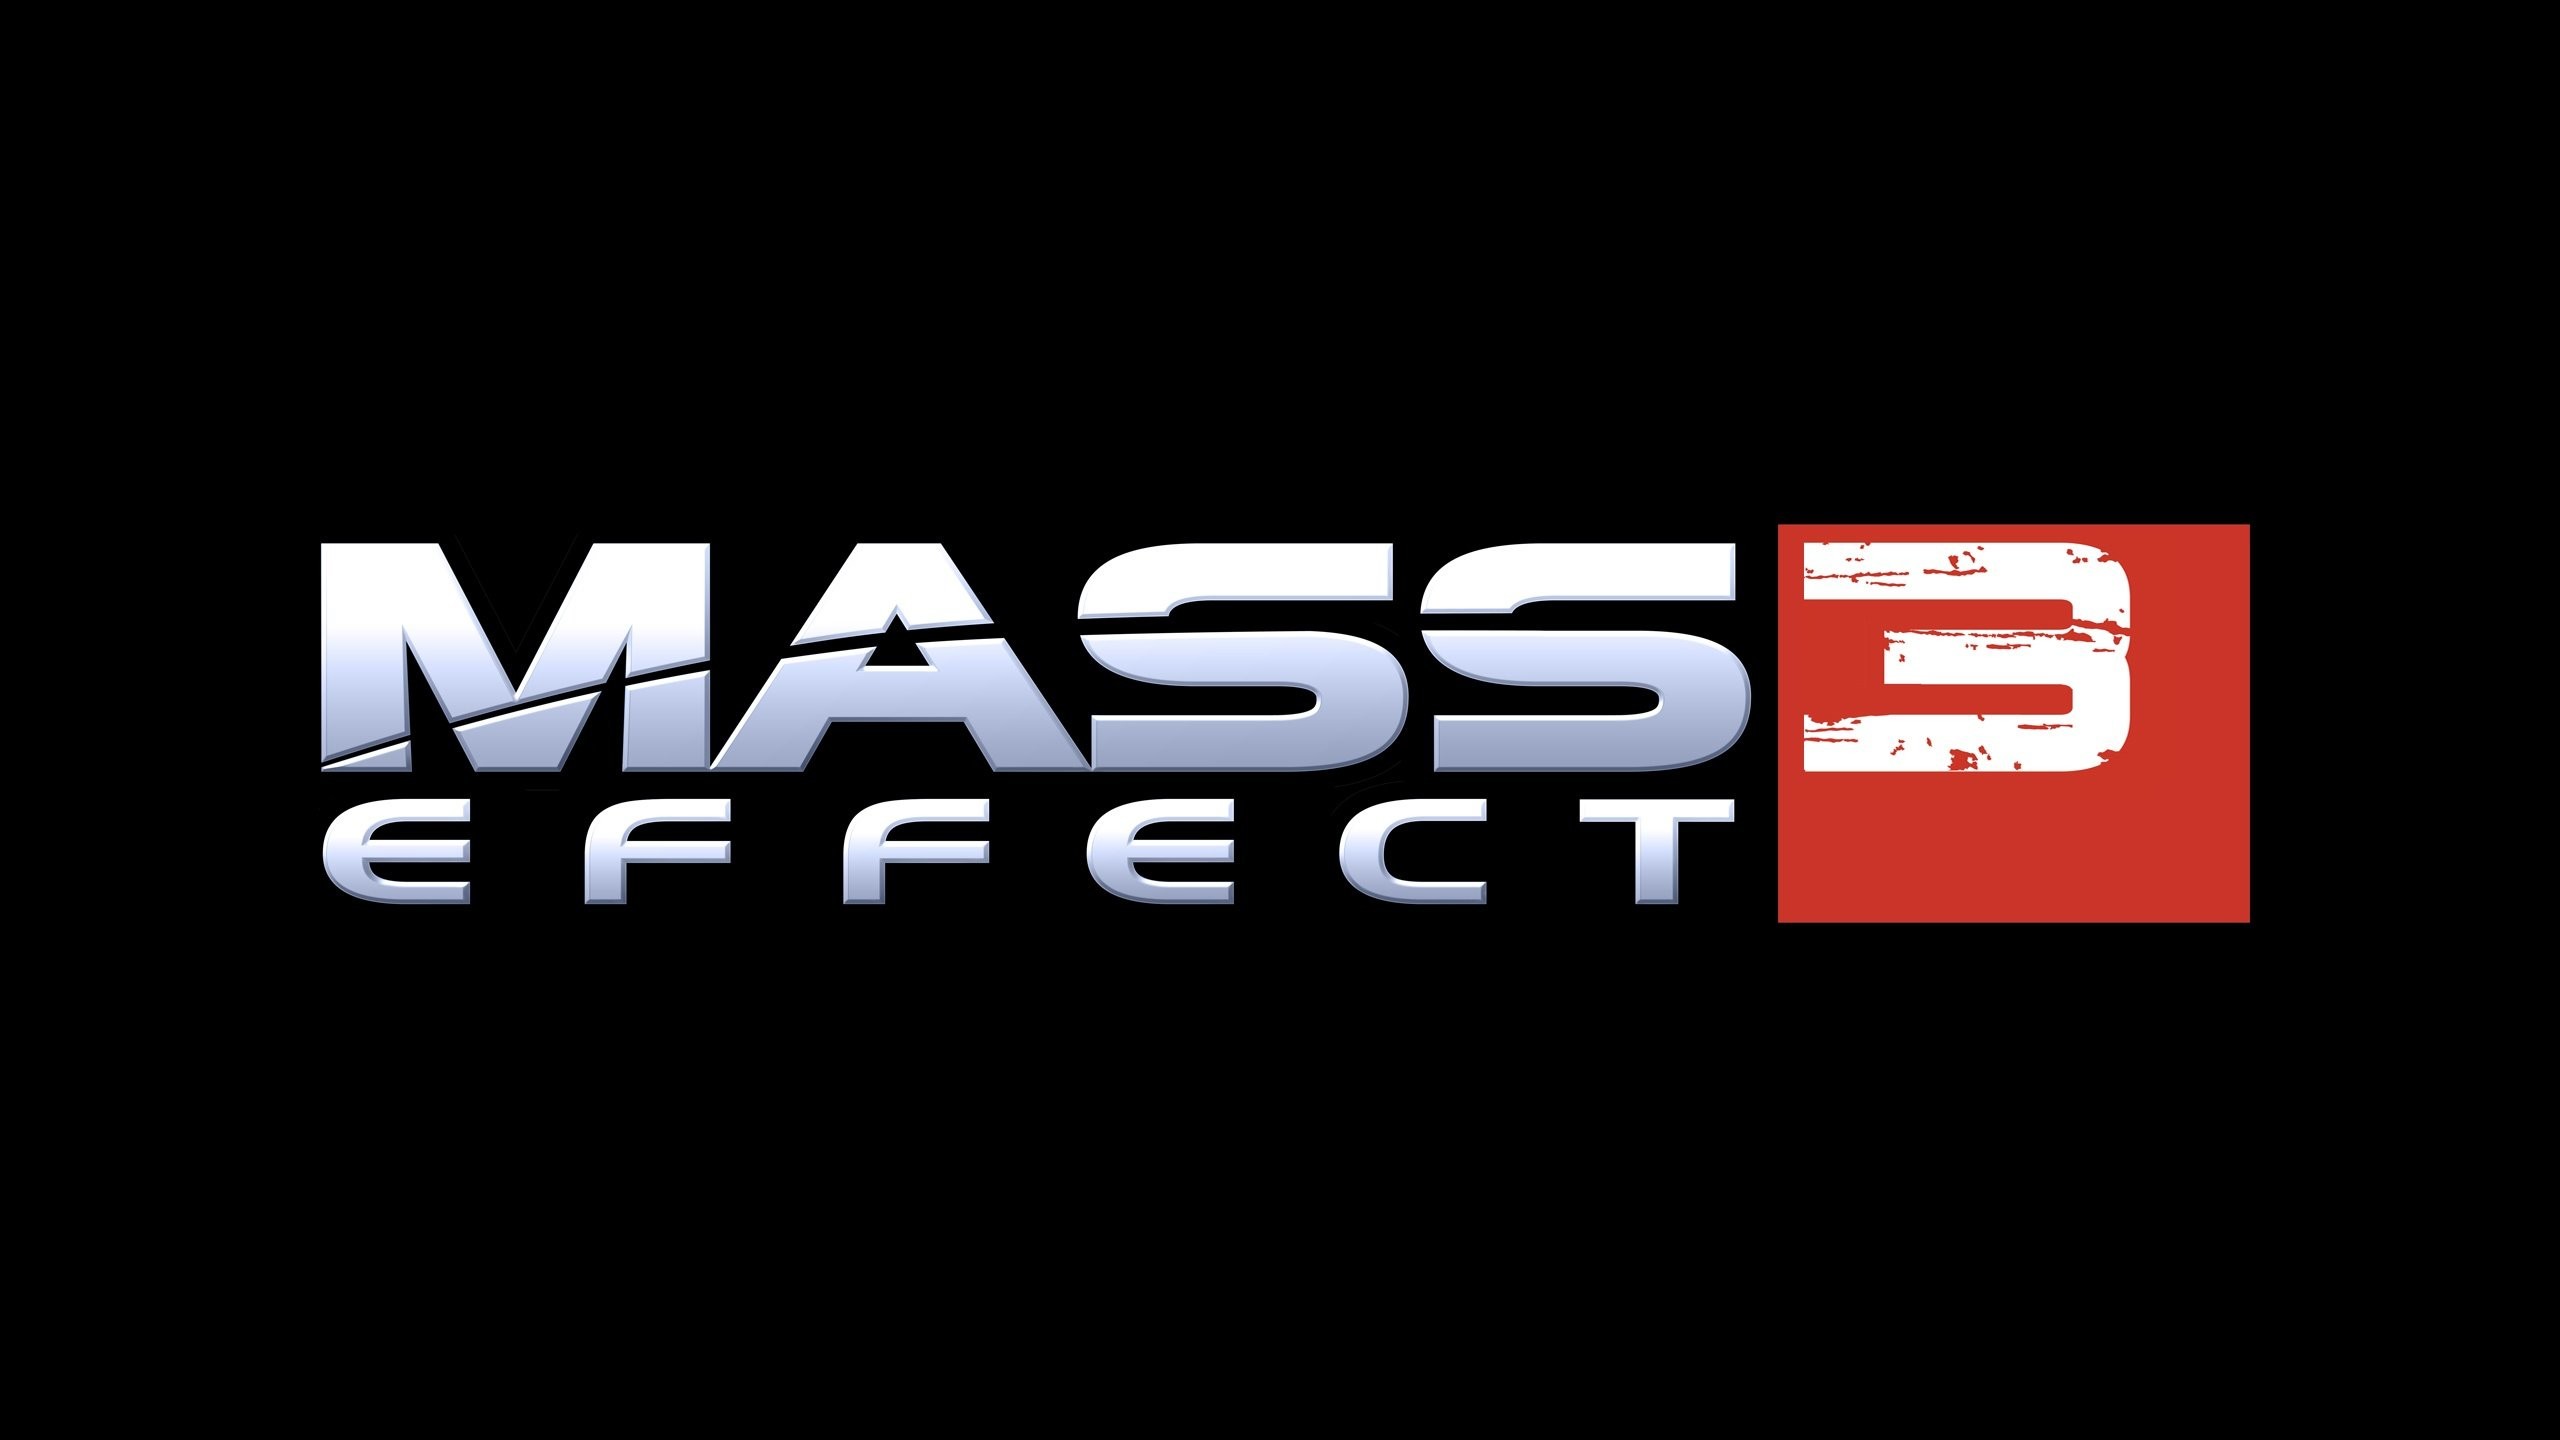 2560x1440 Wallpaper zu Mass Effect 3 herunterladen